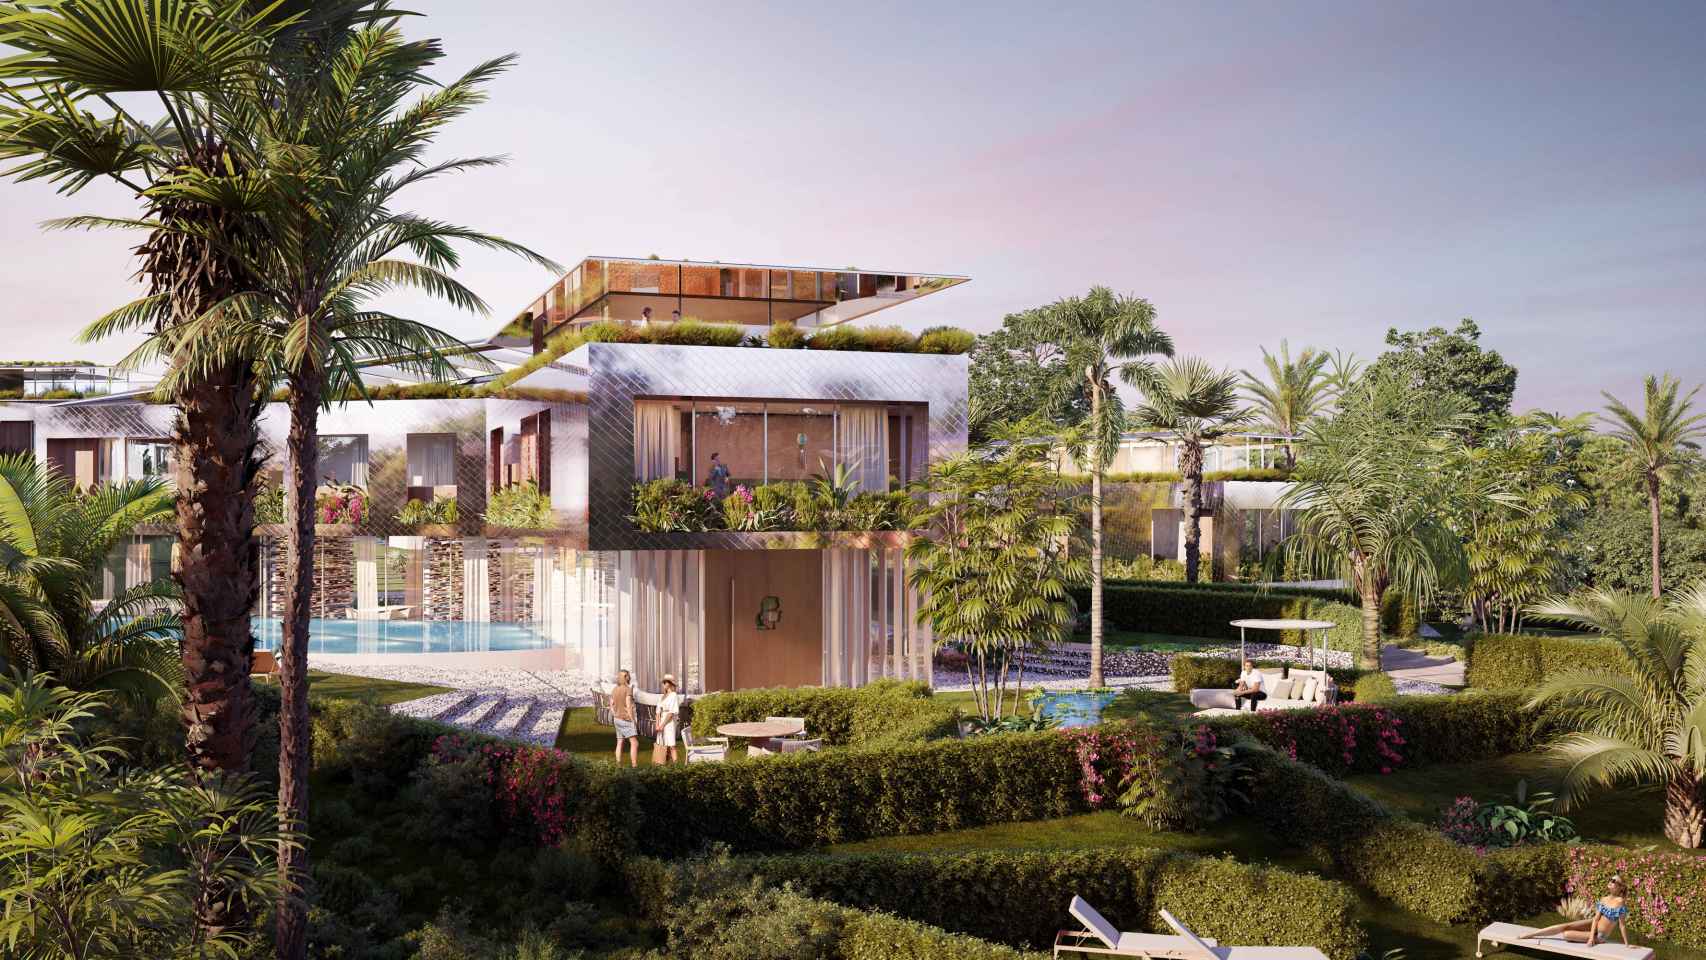 Fachadas con polvo de oro blanco, estanques de agua: así son las villas de lujo de Karl Lagerfeld en Marbella